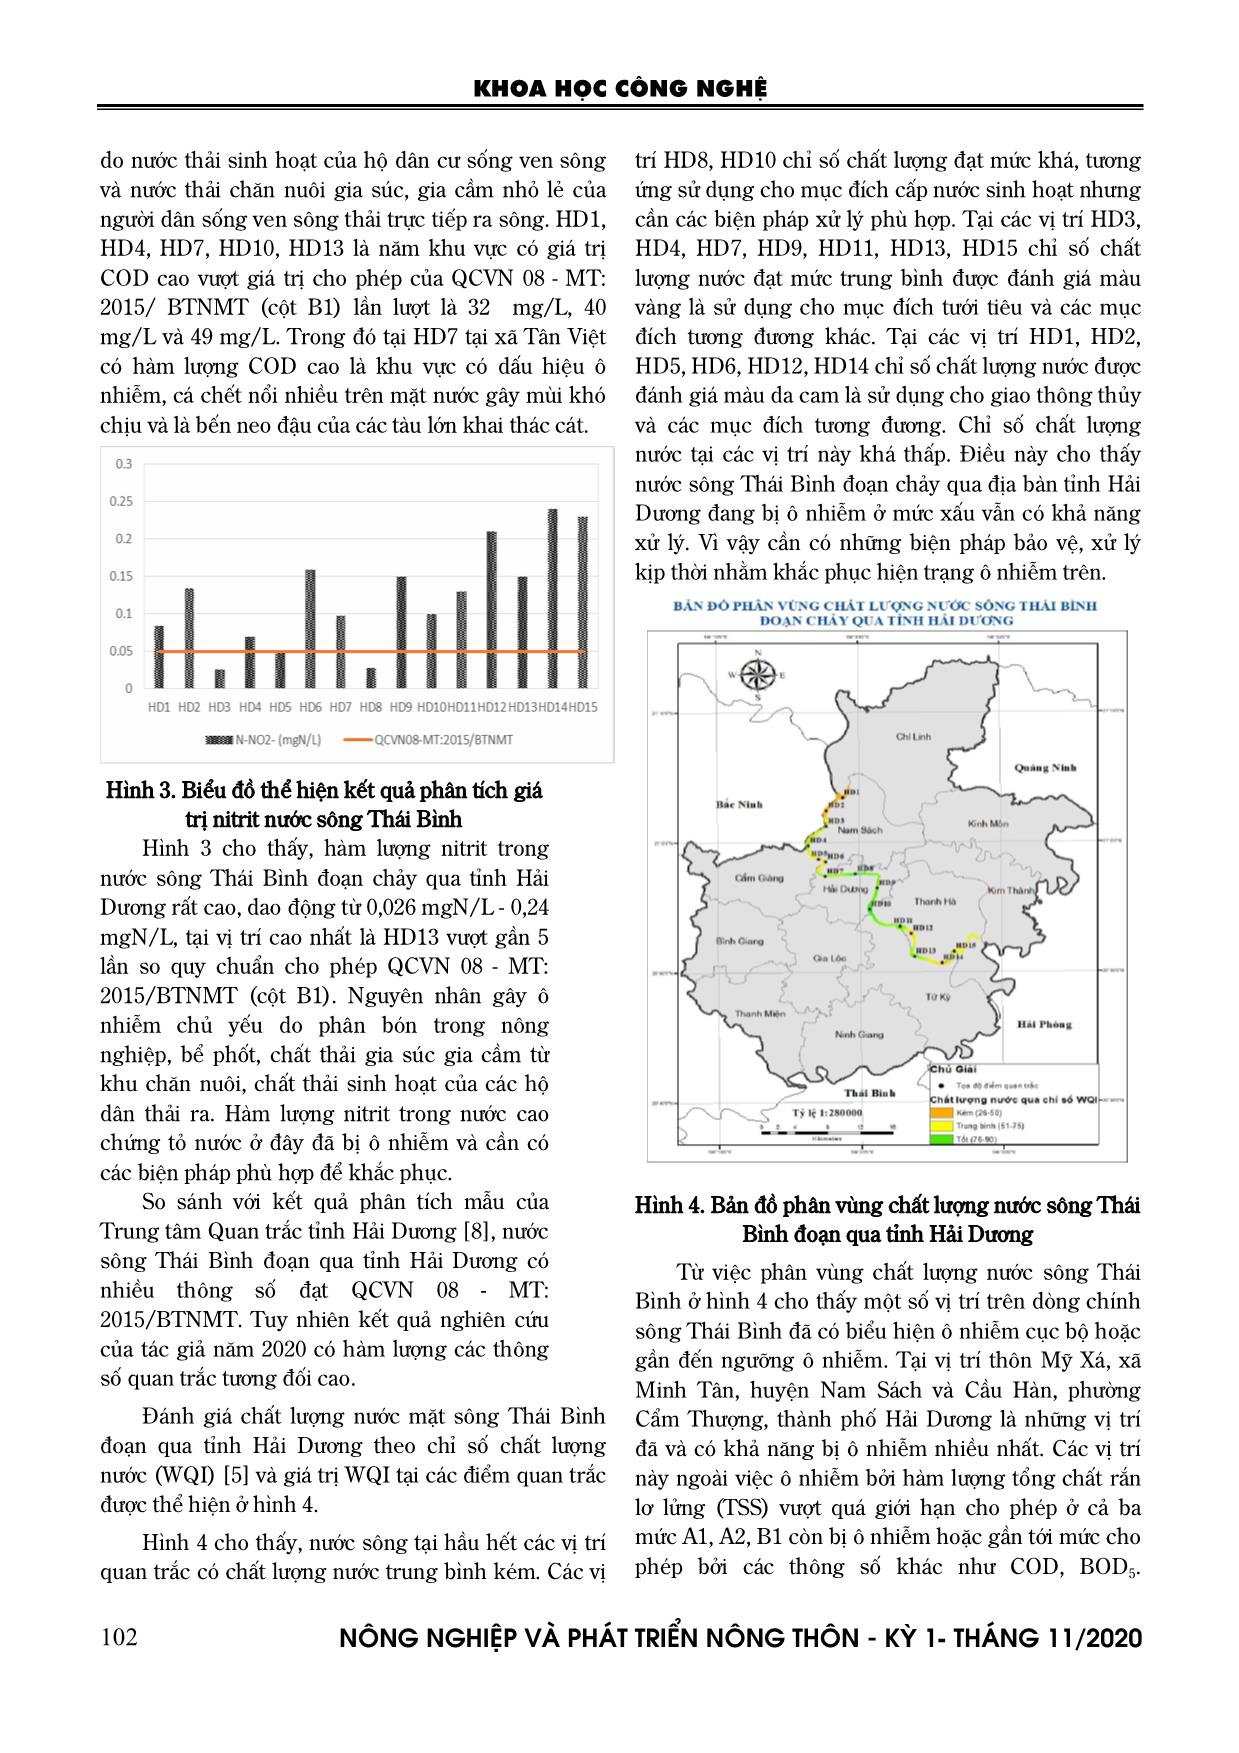 Đánh giá chất lượng nước sông Thái Bình đoạn chảy qua tỉnh Hải Dương, năm 2020 trang 6